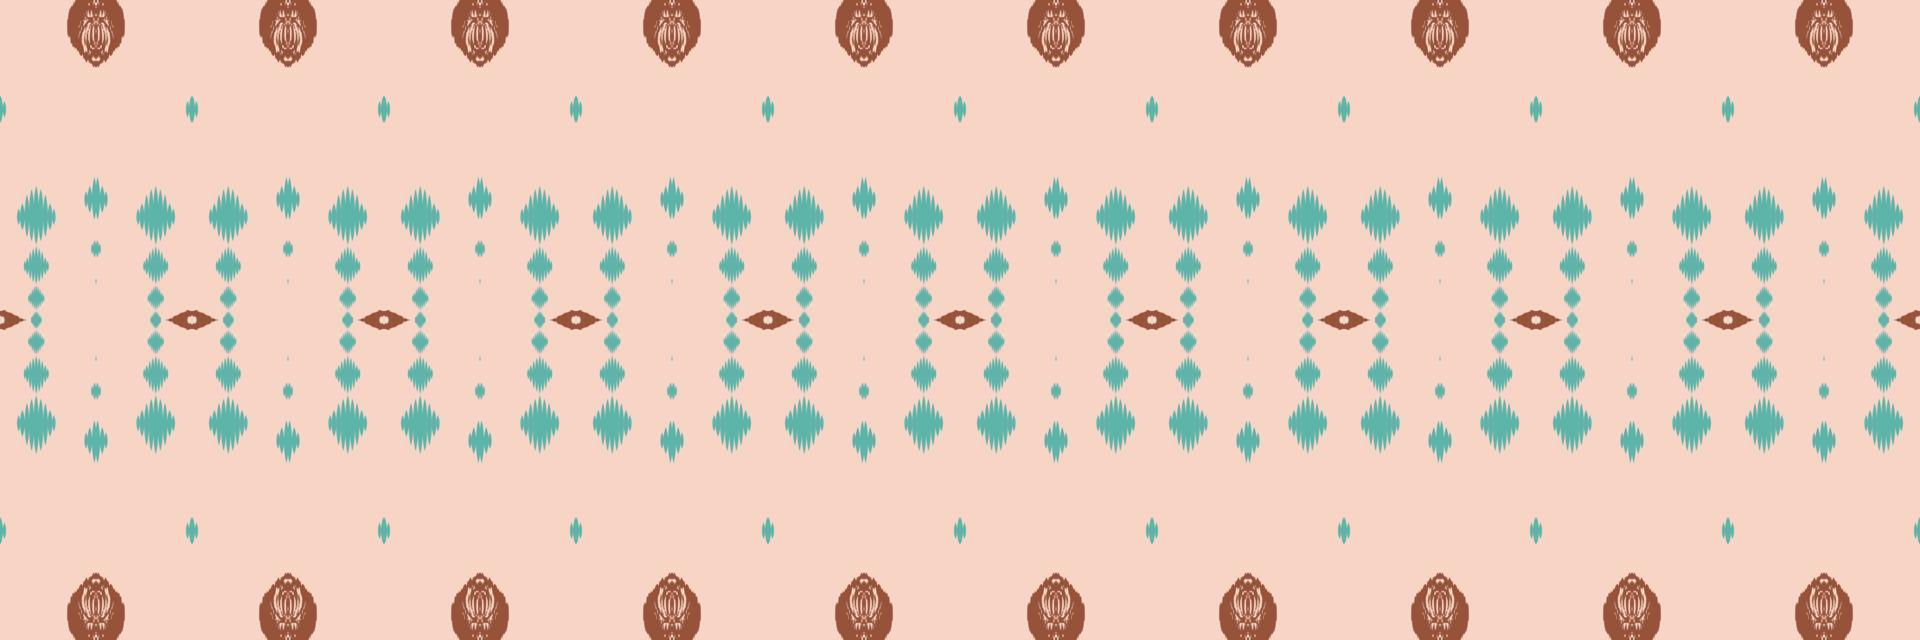 motifs ikat croix tribale motif sans couture. ethnique géométrique batik ikkat numérique vecteur conception textile pour impressions tissu sari mughal brosse symbole andains texture kurti kurtis kurtas